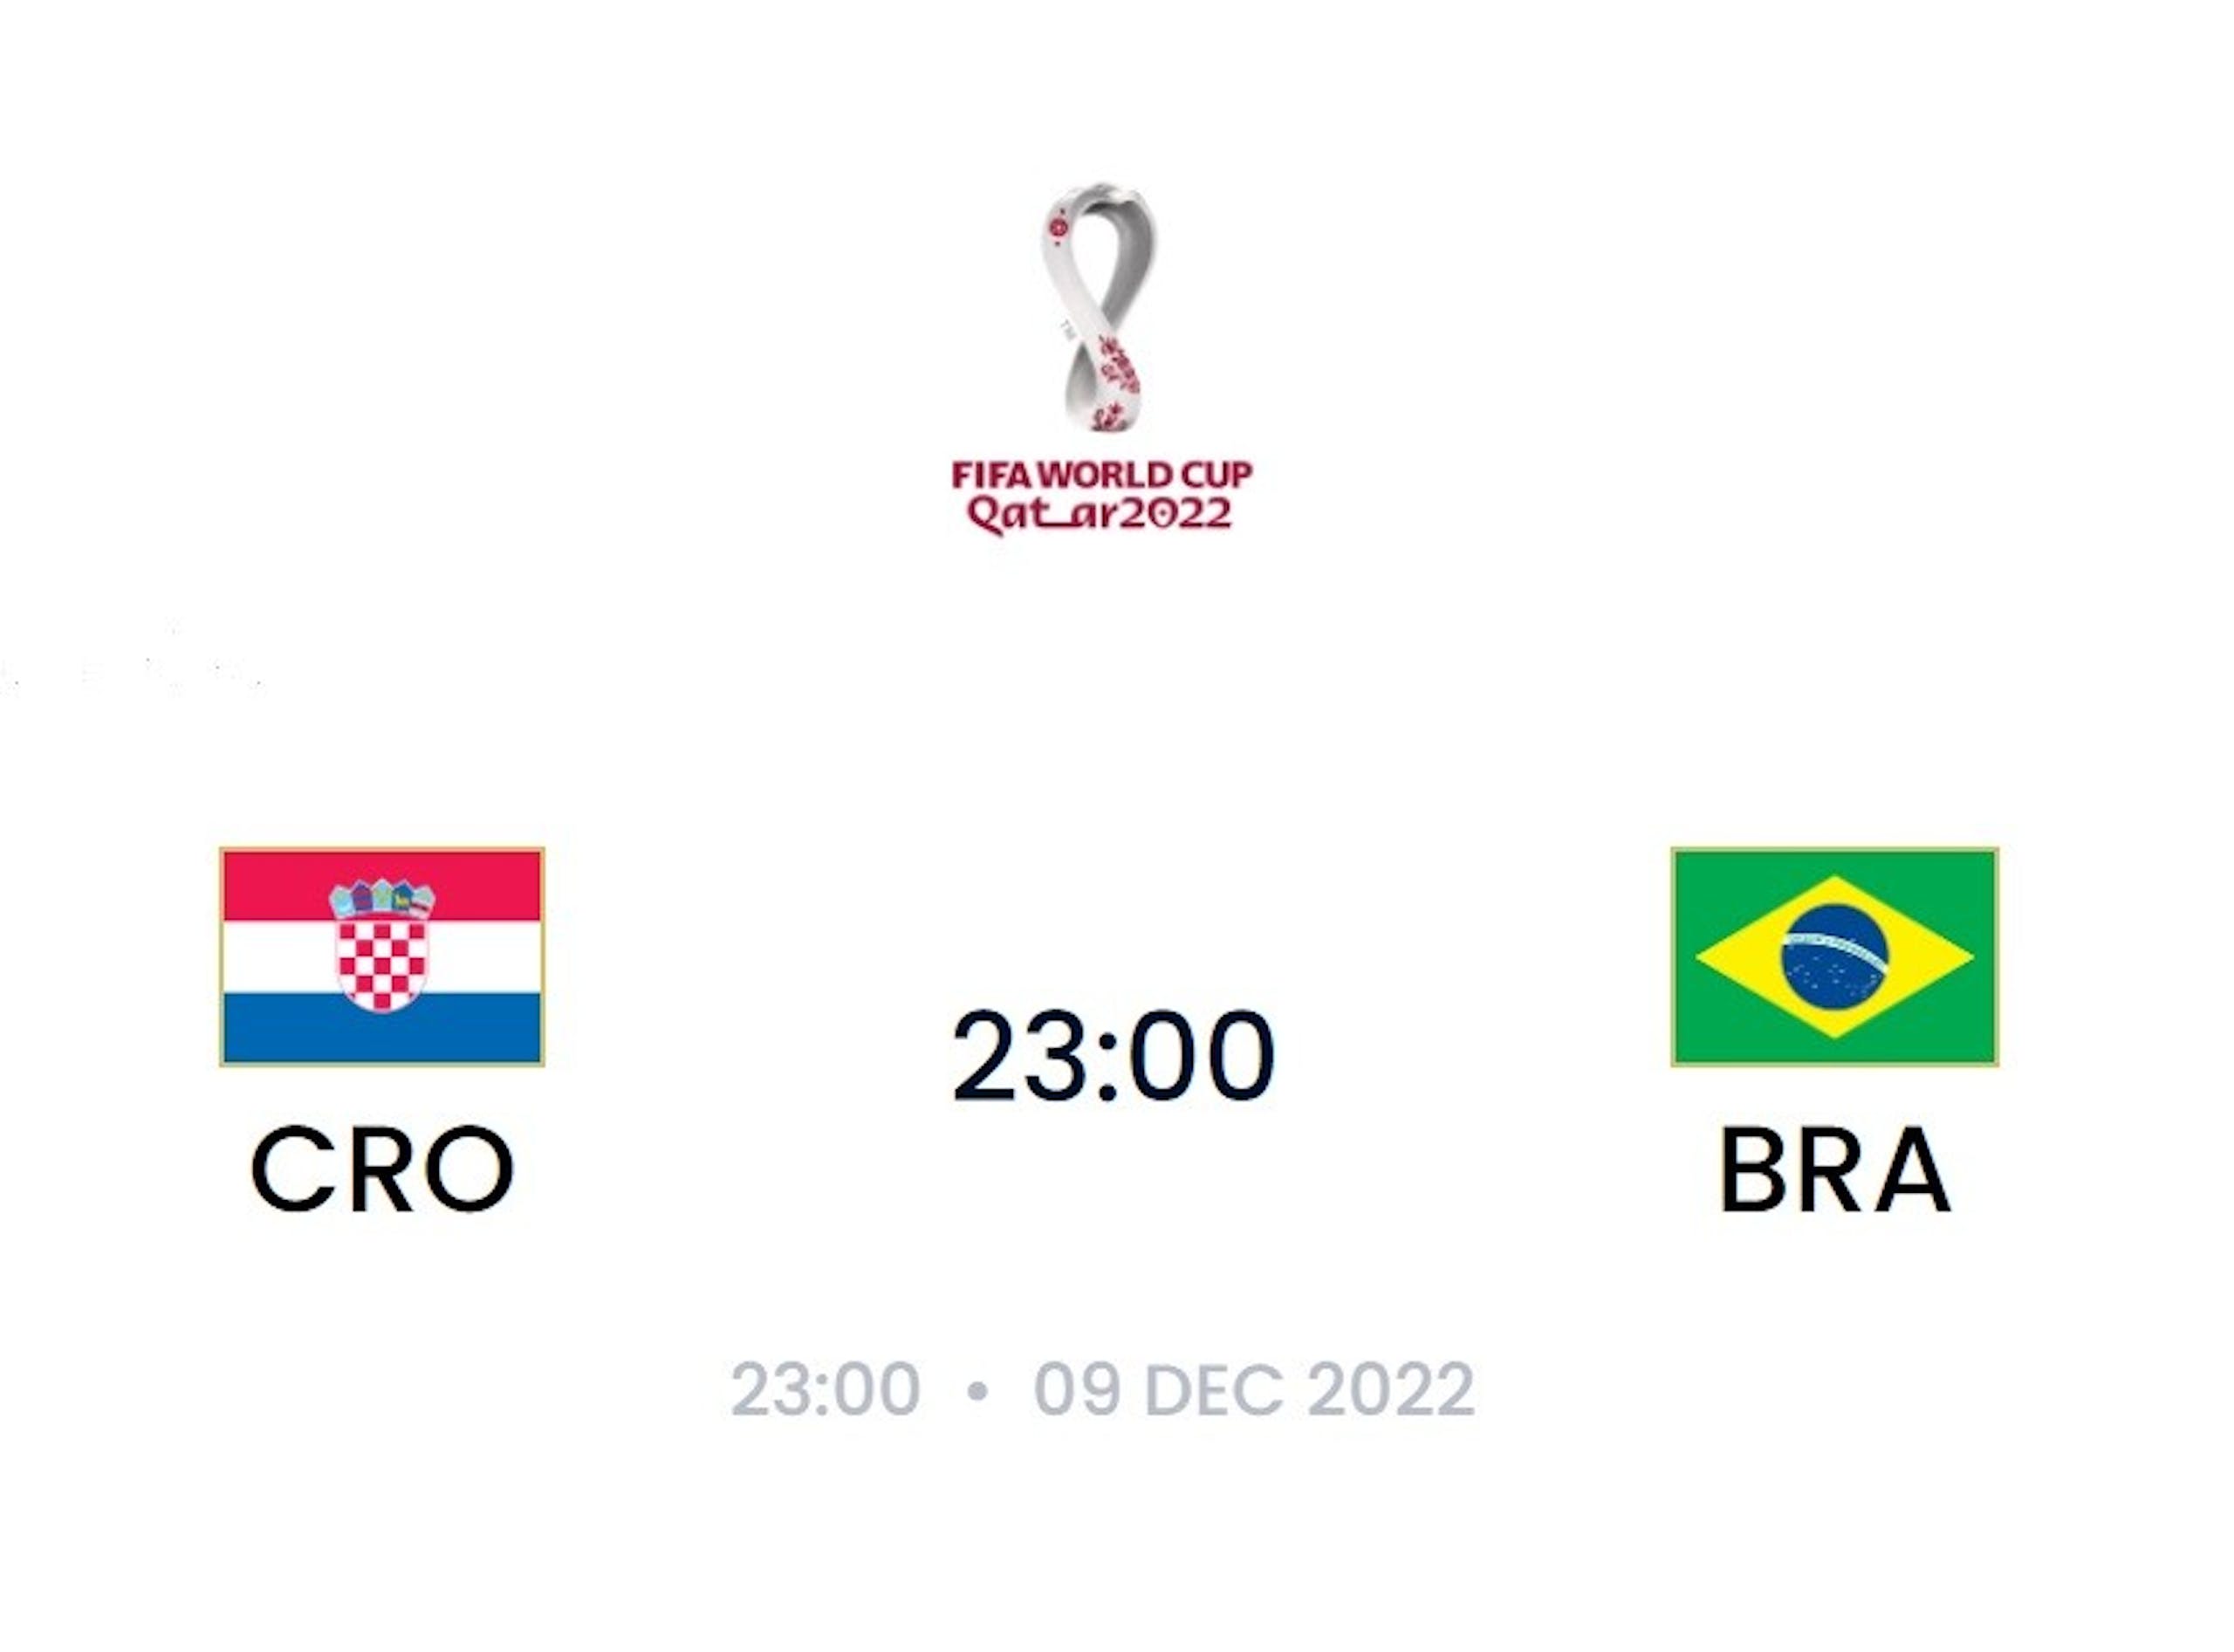 照片中提到了CRO、FIFA WORLD CUP、Qatar2022，跟巴西有關，包含了斯科爾葡萄牙 vs 加納 2022、FIFA 世界杯卡塔爾 2022™、巴西國家足球隊、葡萄牙國家足球隊、2022 年國際足聯世界杯 H 組